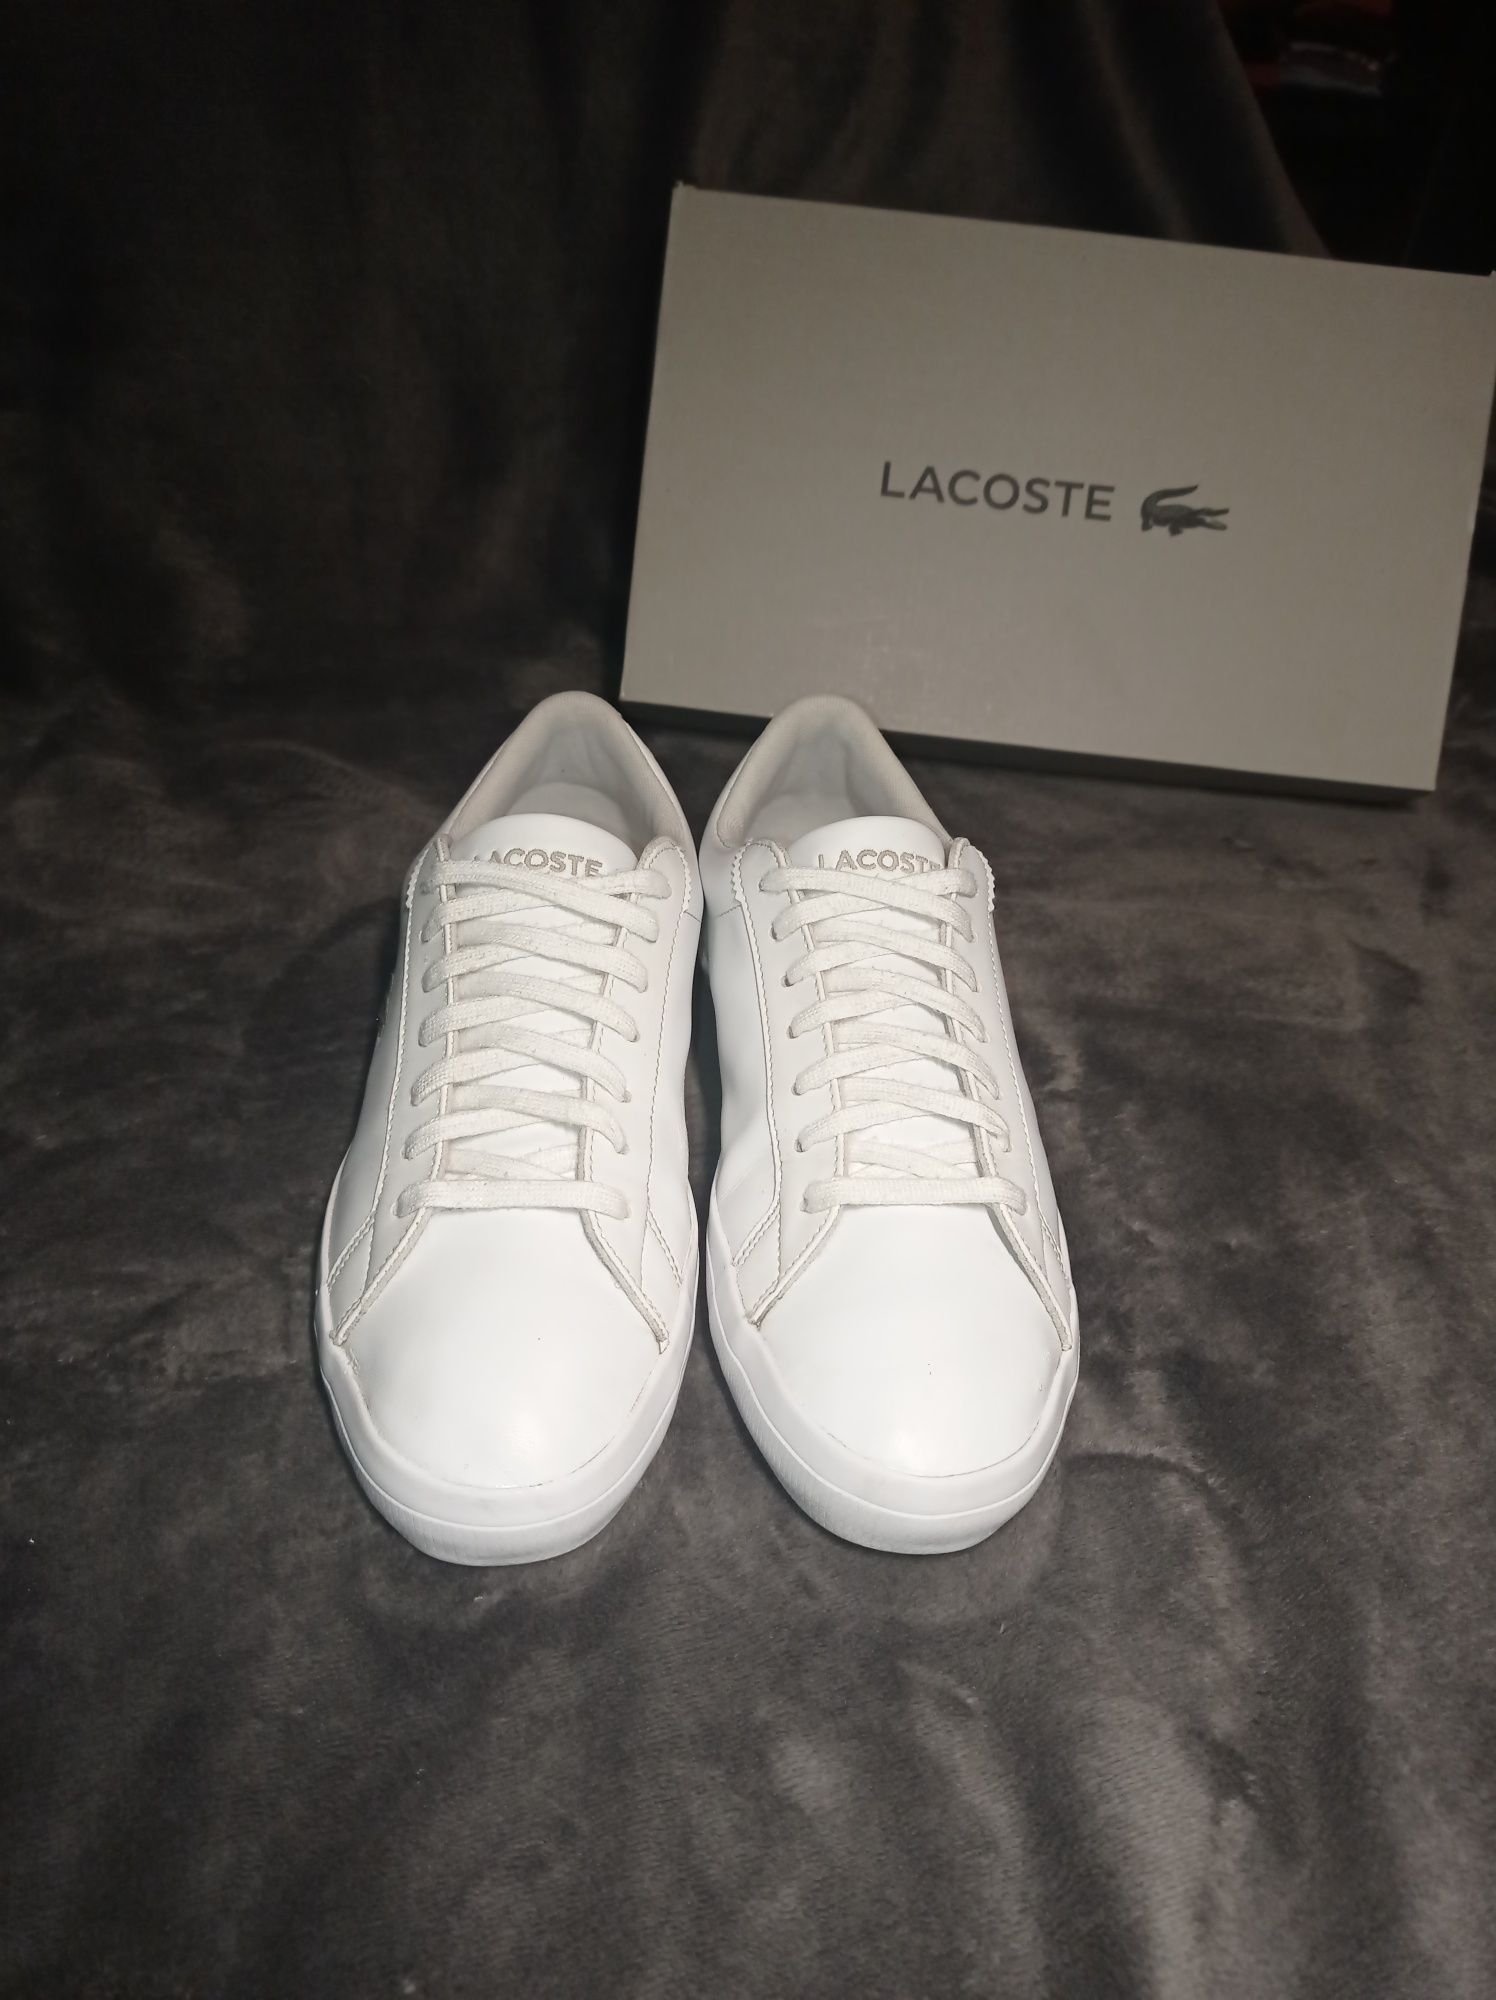 Buty Lacoste Lerond rozmiar 41 wkładka 26 cm białe trampki skóra męski